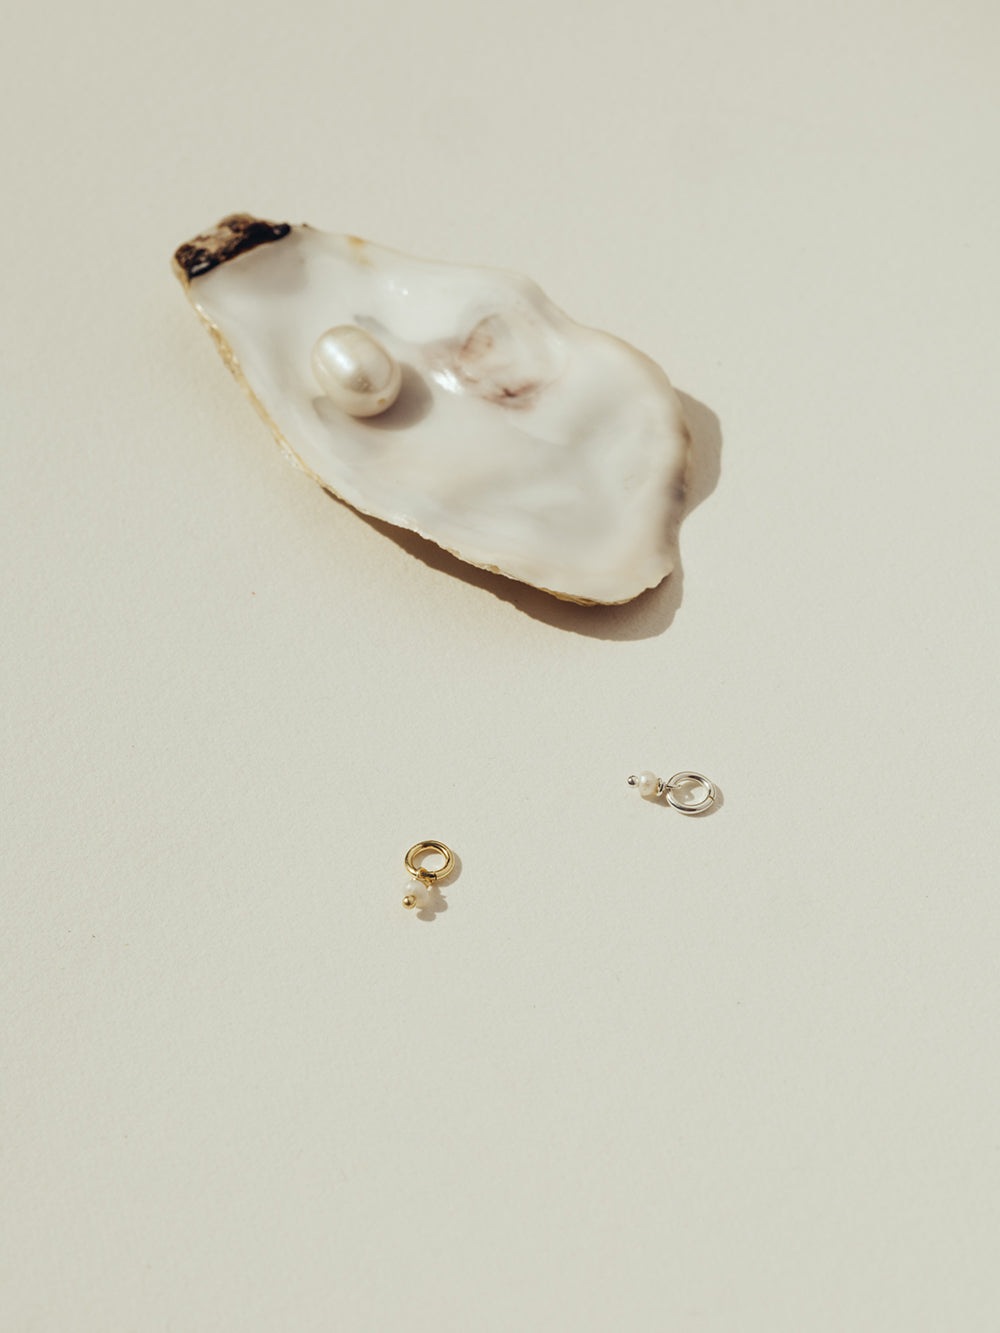 Birthstone June - Pearl | 925 Sterling Silver